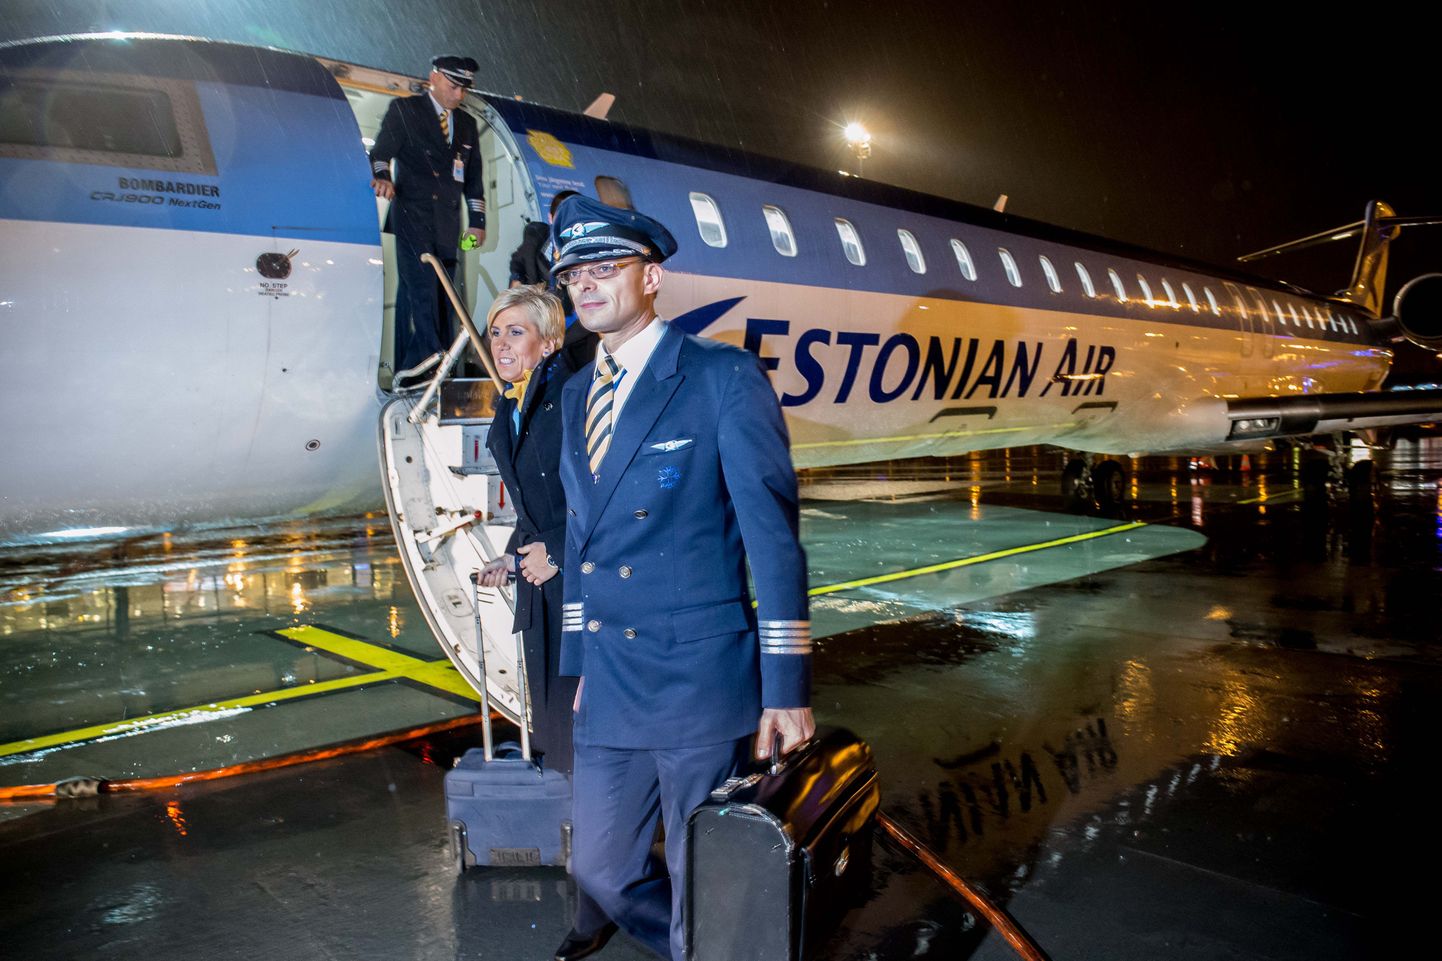 Estonian Airi viimane lend saabus Tallinna lennujaama 2015. aasta 7. novembri õhtul. Esiplaanil piloot Immanuel Pärt.